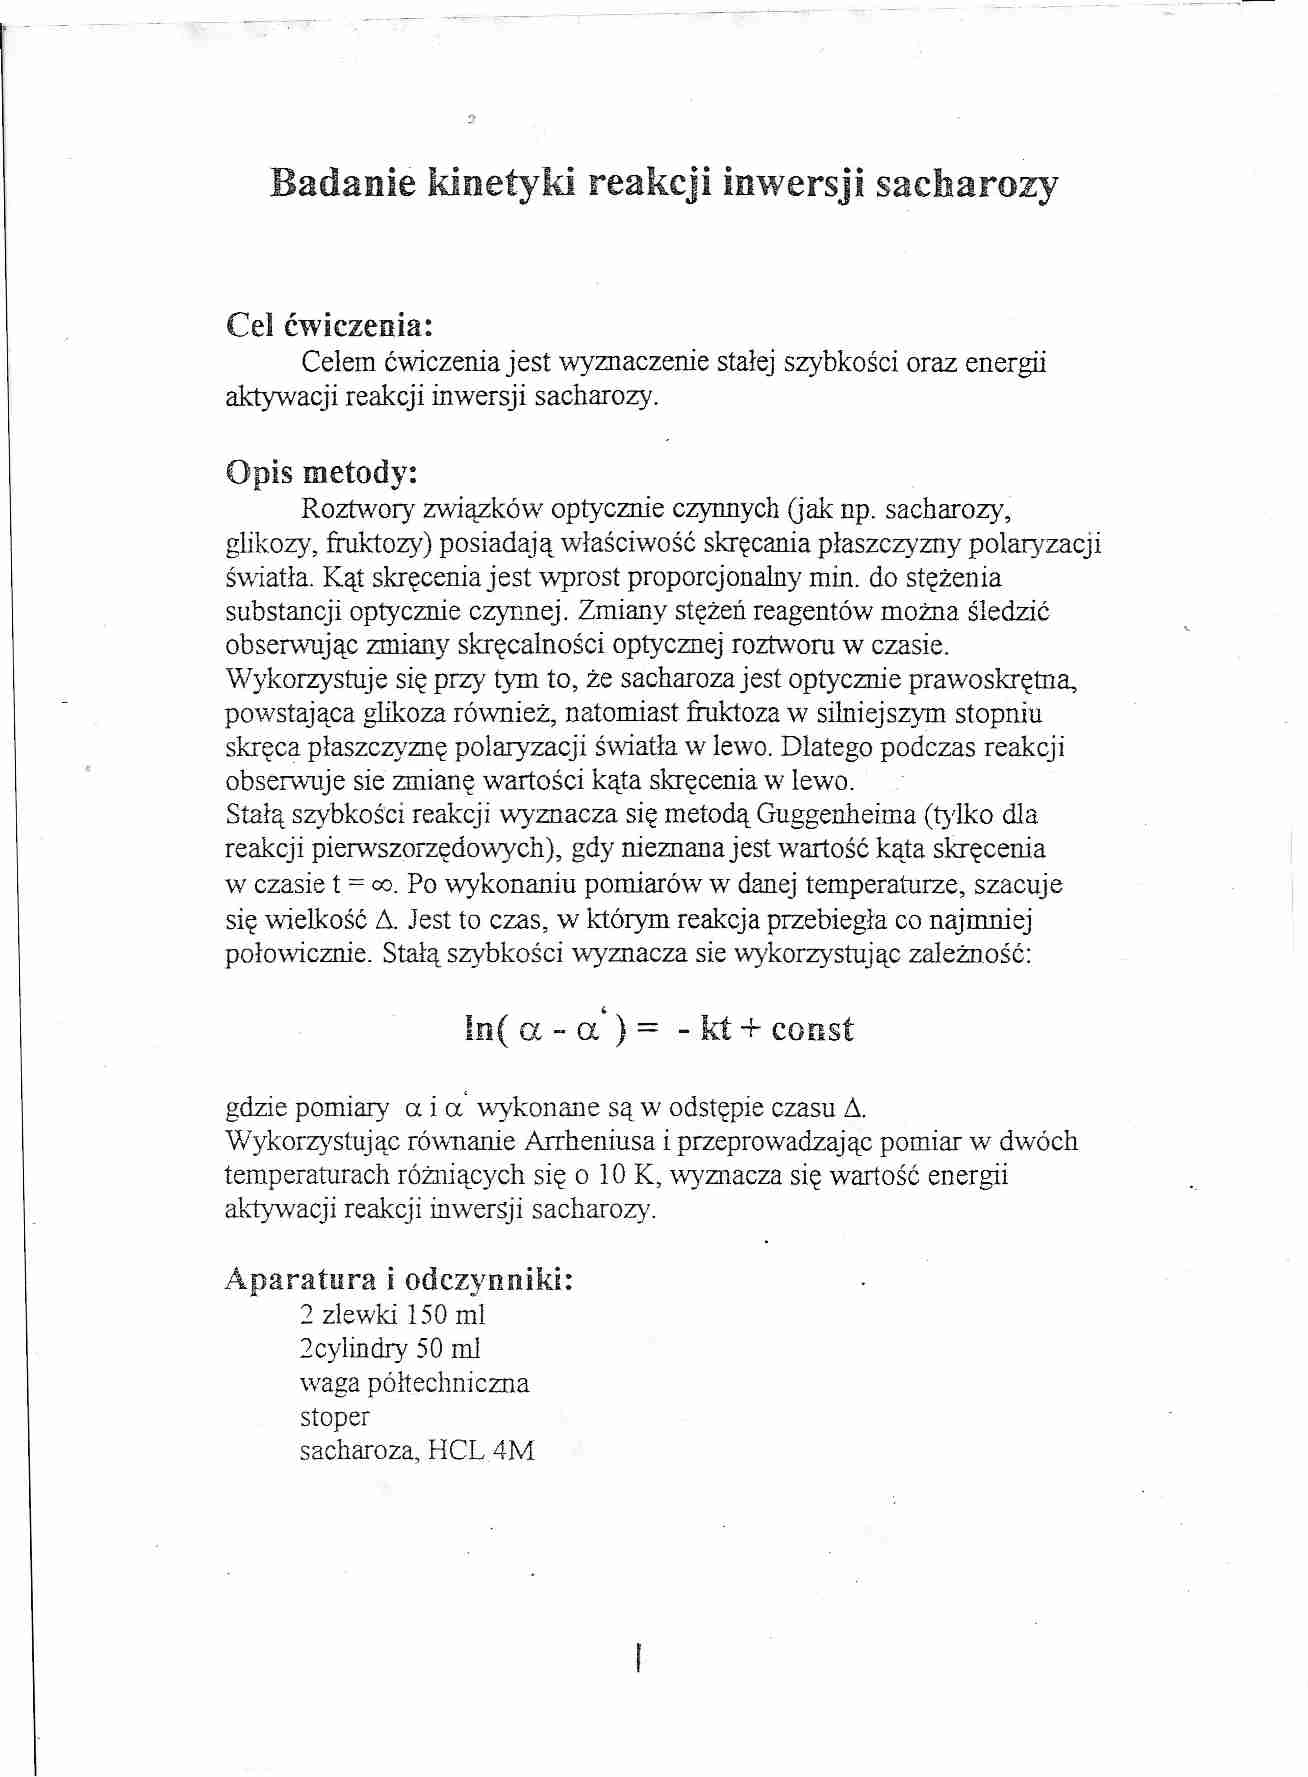 Inwersja sacharozy- instrukcje laboratoryjne - strona 1